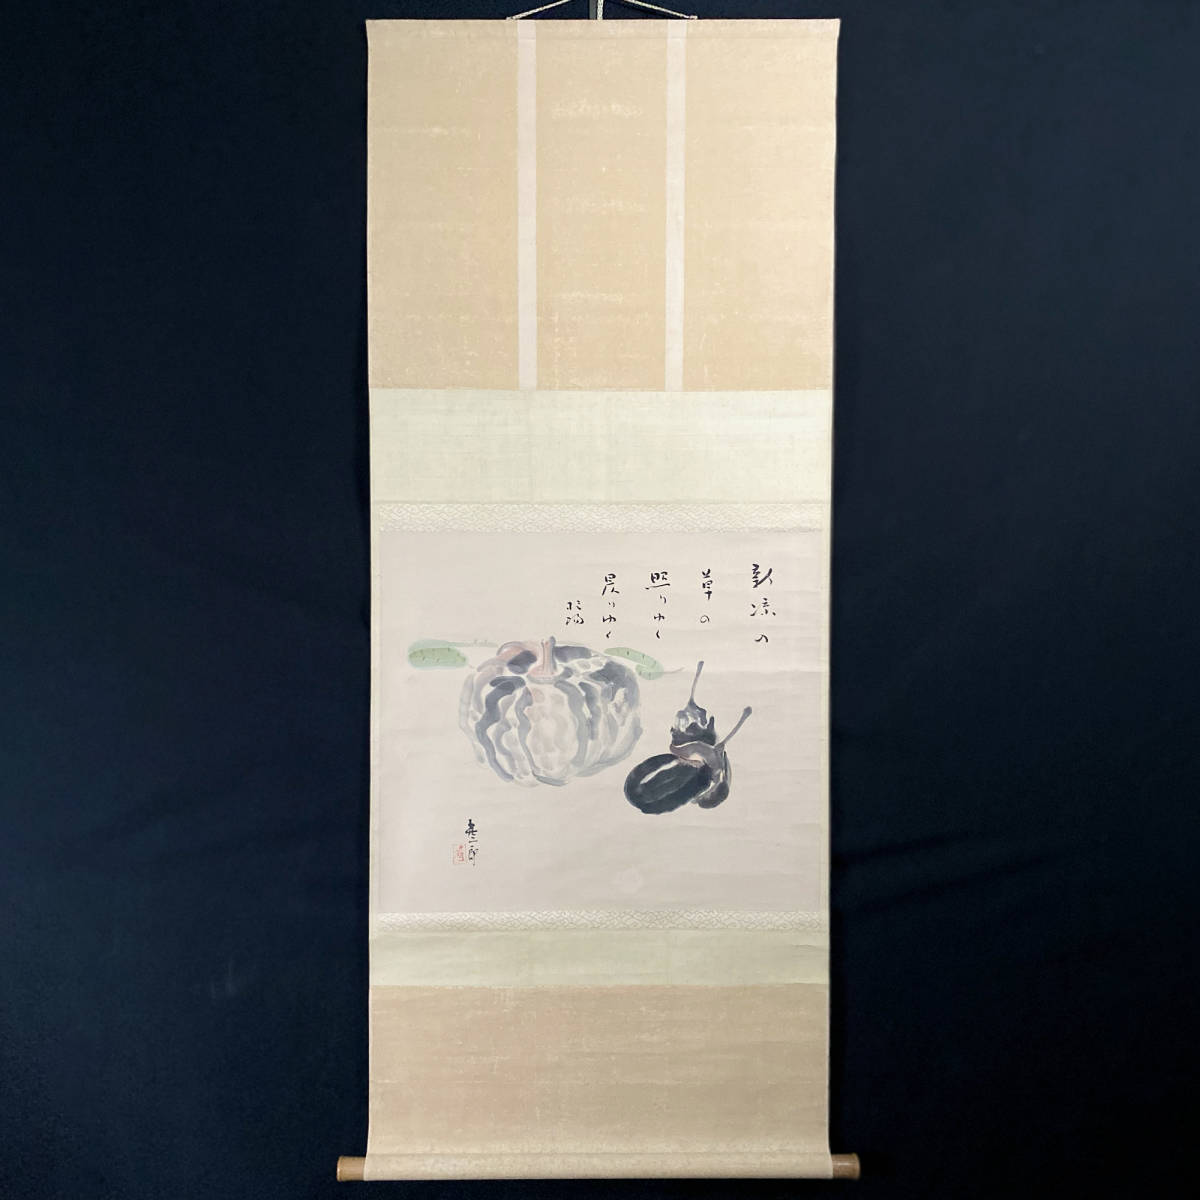 【正品】太田喜二郎毛笔/纸立轴日本画秋茄南瓜231101010, 绘画, 日本画, 其他的